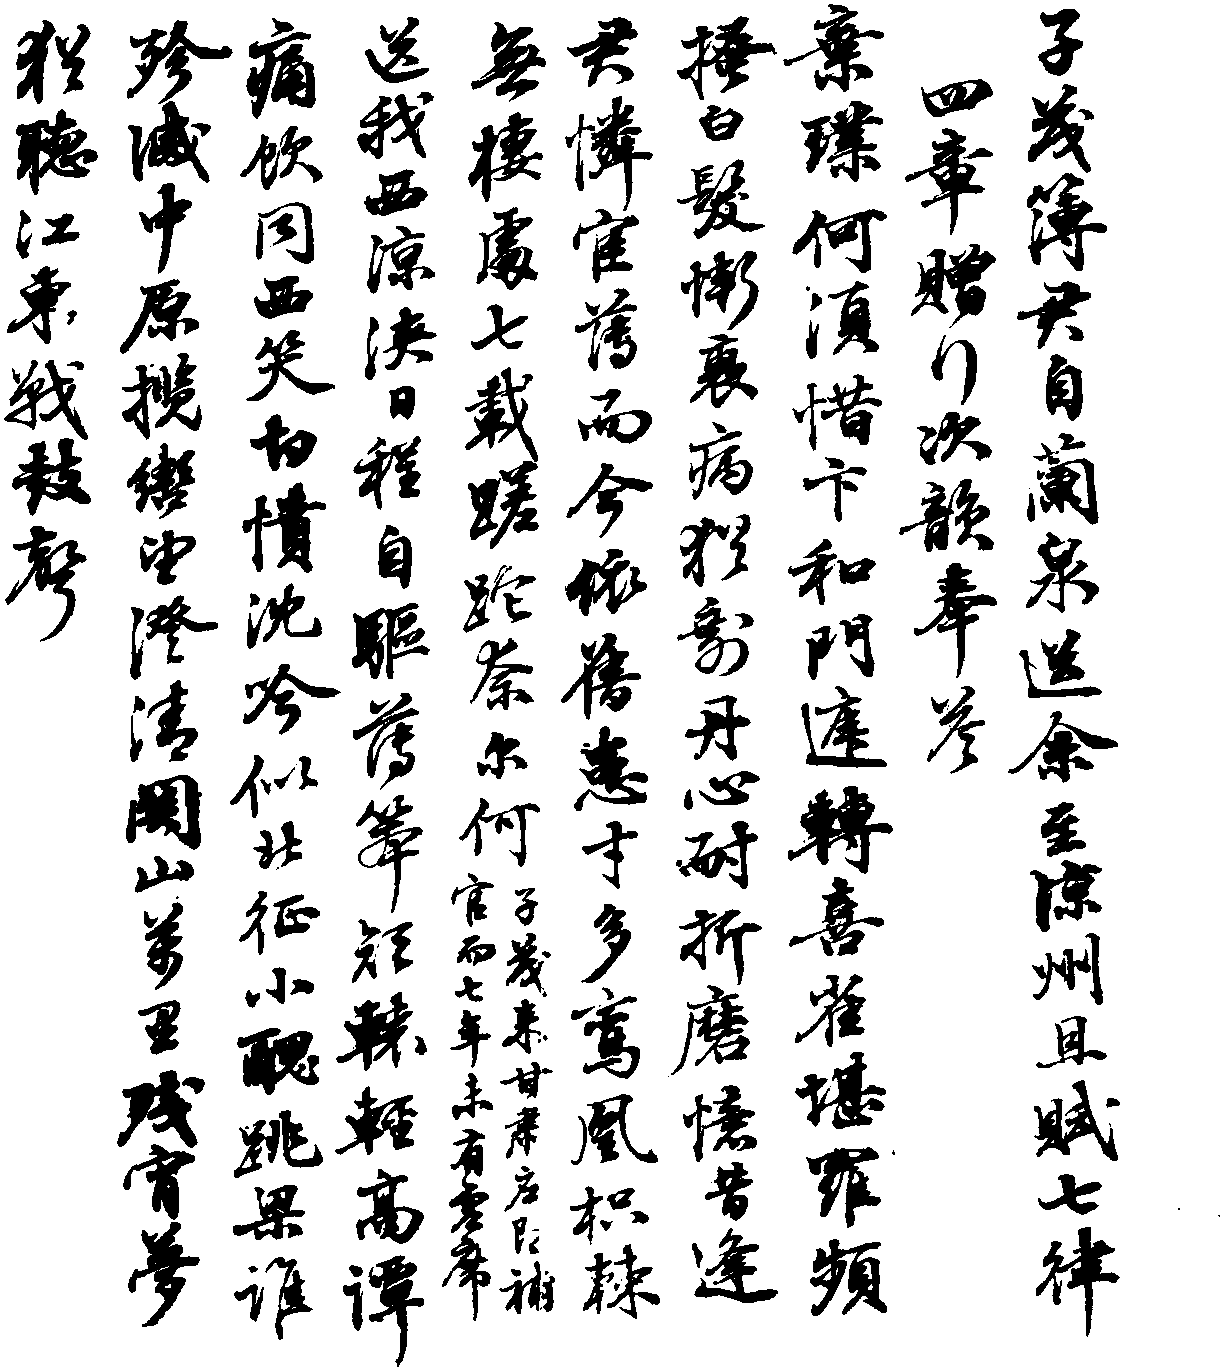 林则徐流放途中诗作手迹(1842年中秋)